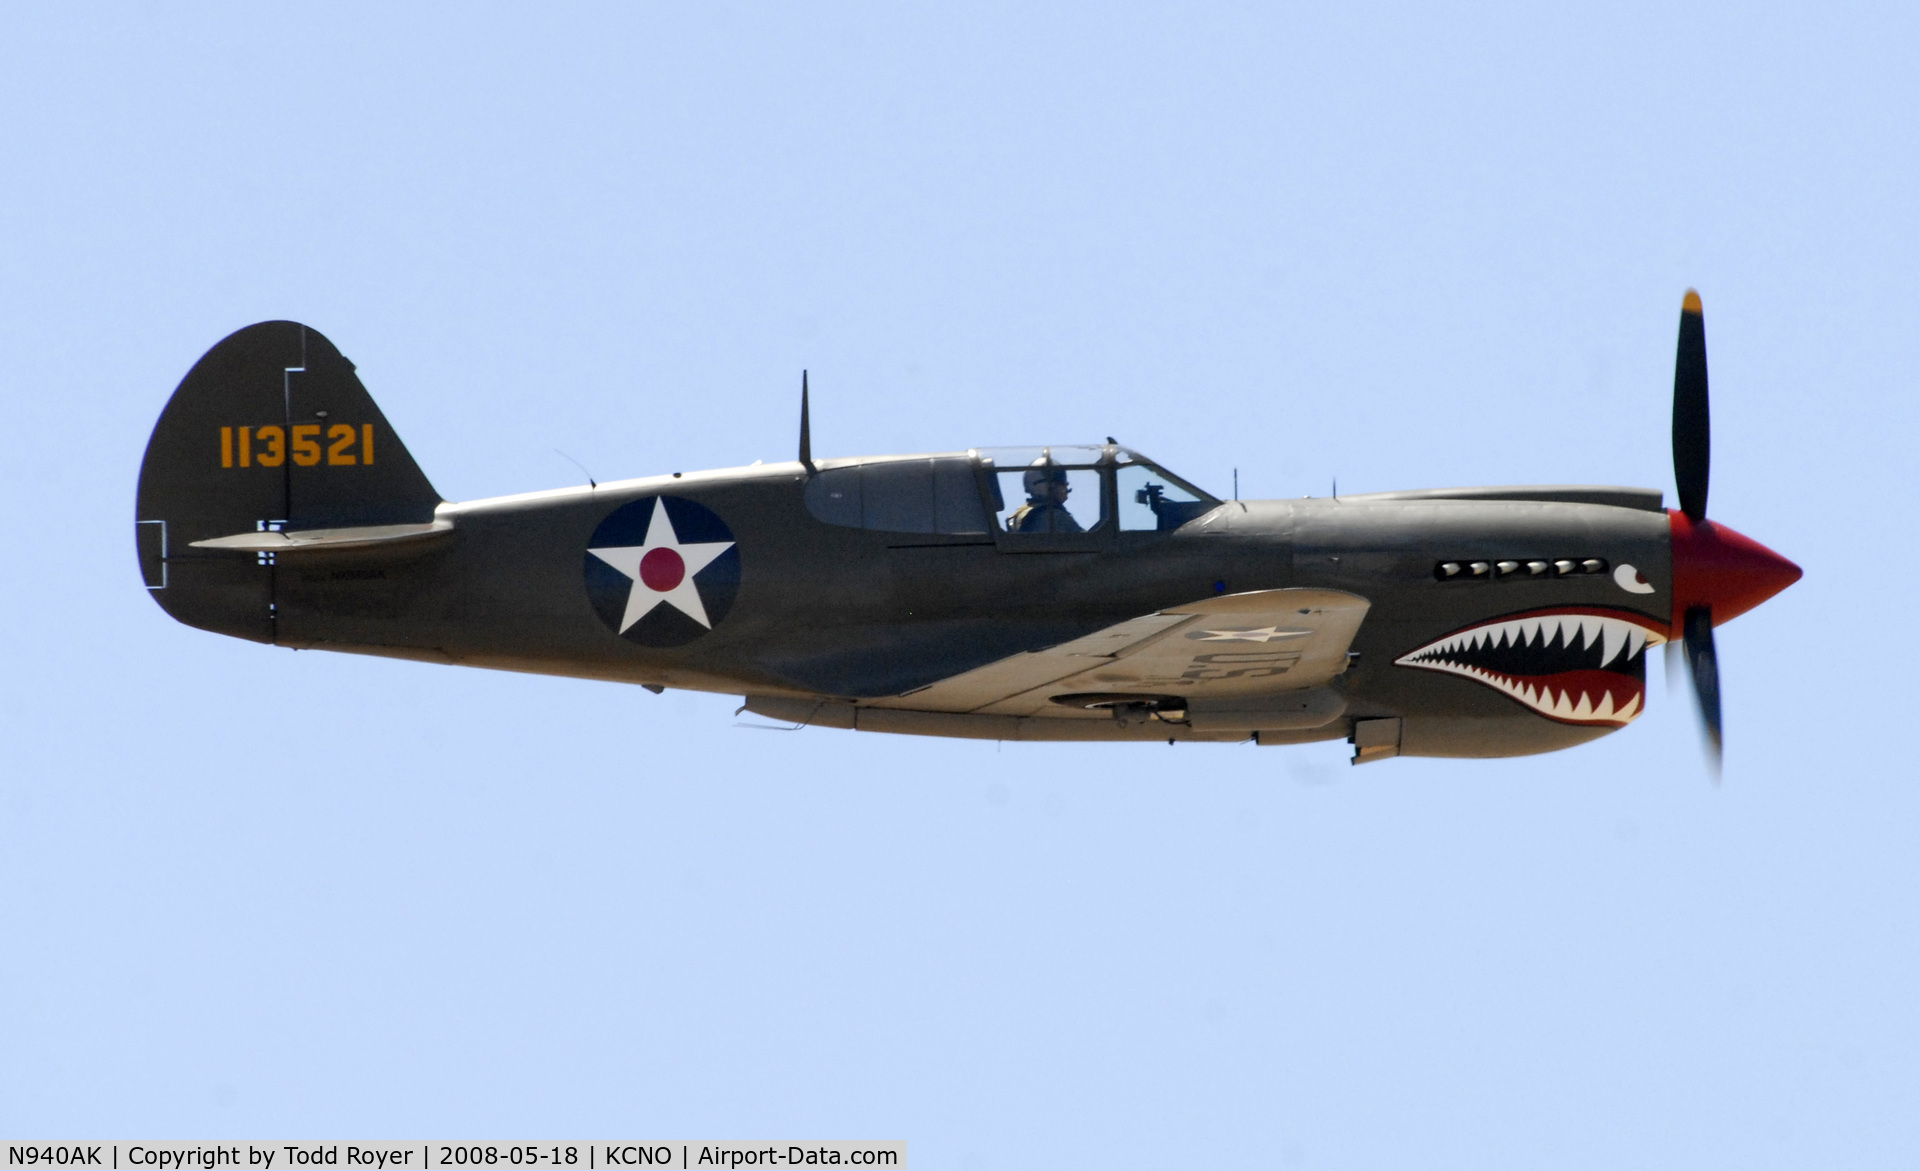 N940AK, 1941 Curtiss P-40E Warhawk C/N 15321, Chino Airshow 2008